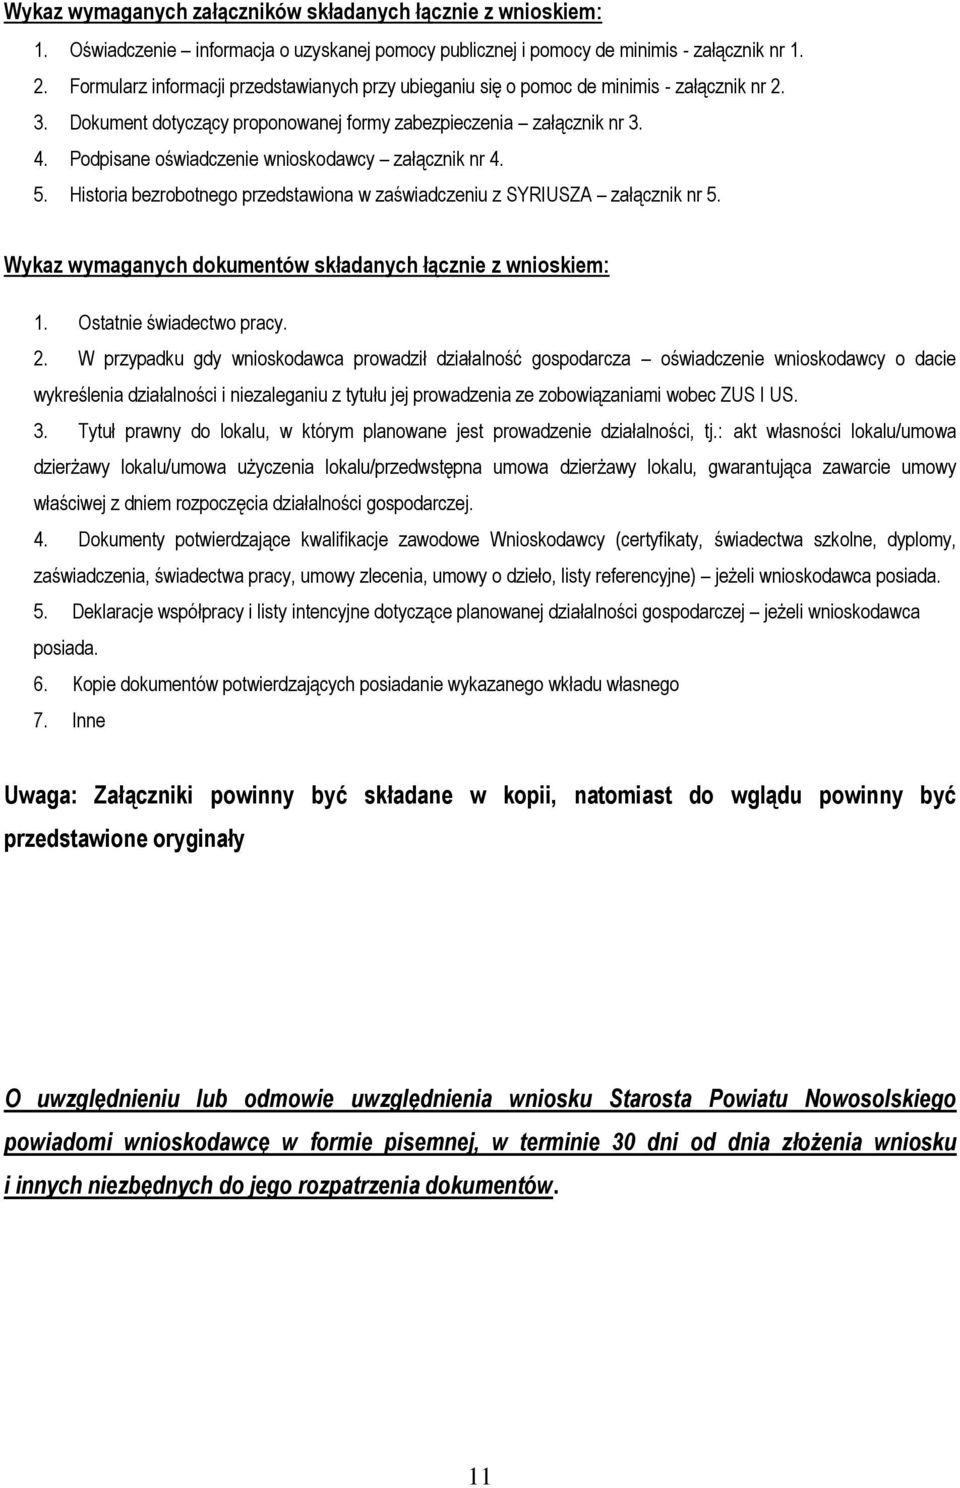 Podpisane oświadczenie wnioskodawcy załącznik nr 4. 5. Historia bezrobotnego przedstawiona w zaświadczeniu z SYRIUSZA załącznik nr 5. Wykaz wymaganych dokumentów składanych łącznie z wnioskiem: 1.